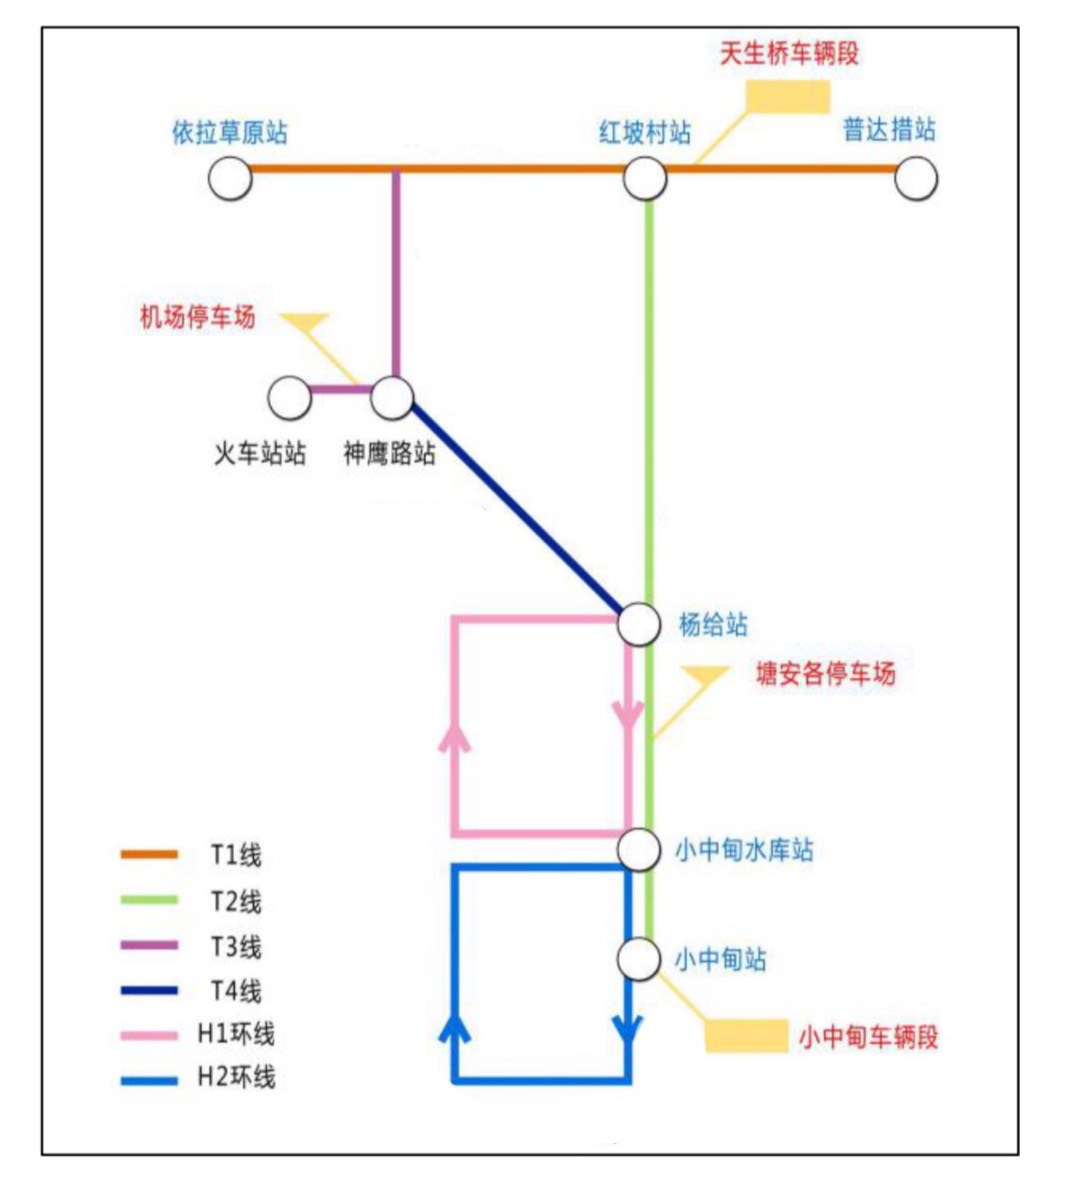 總體線網運行模式示意圖